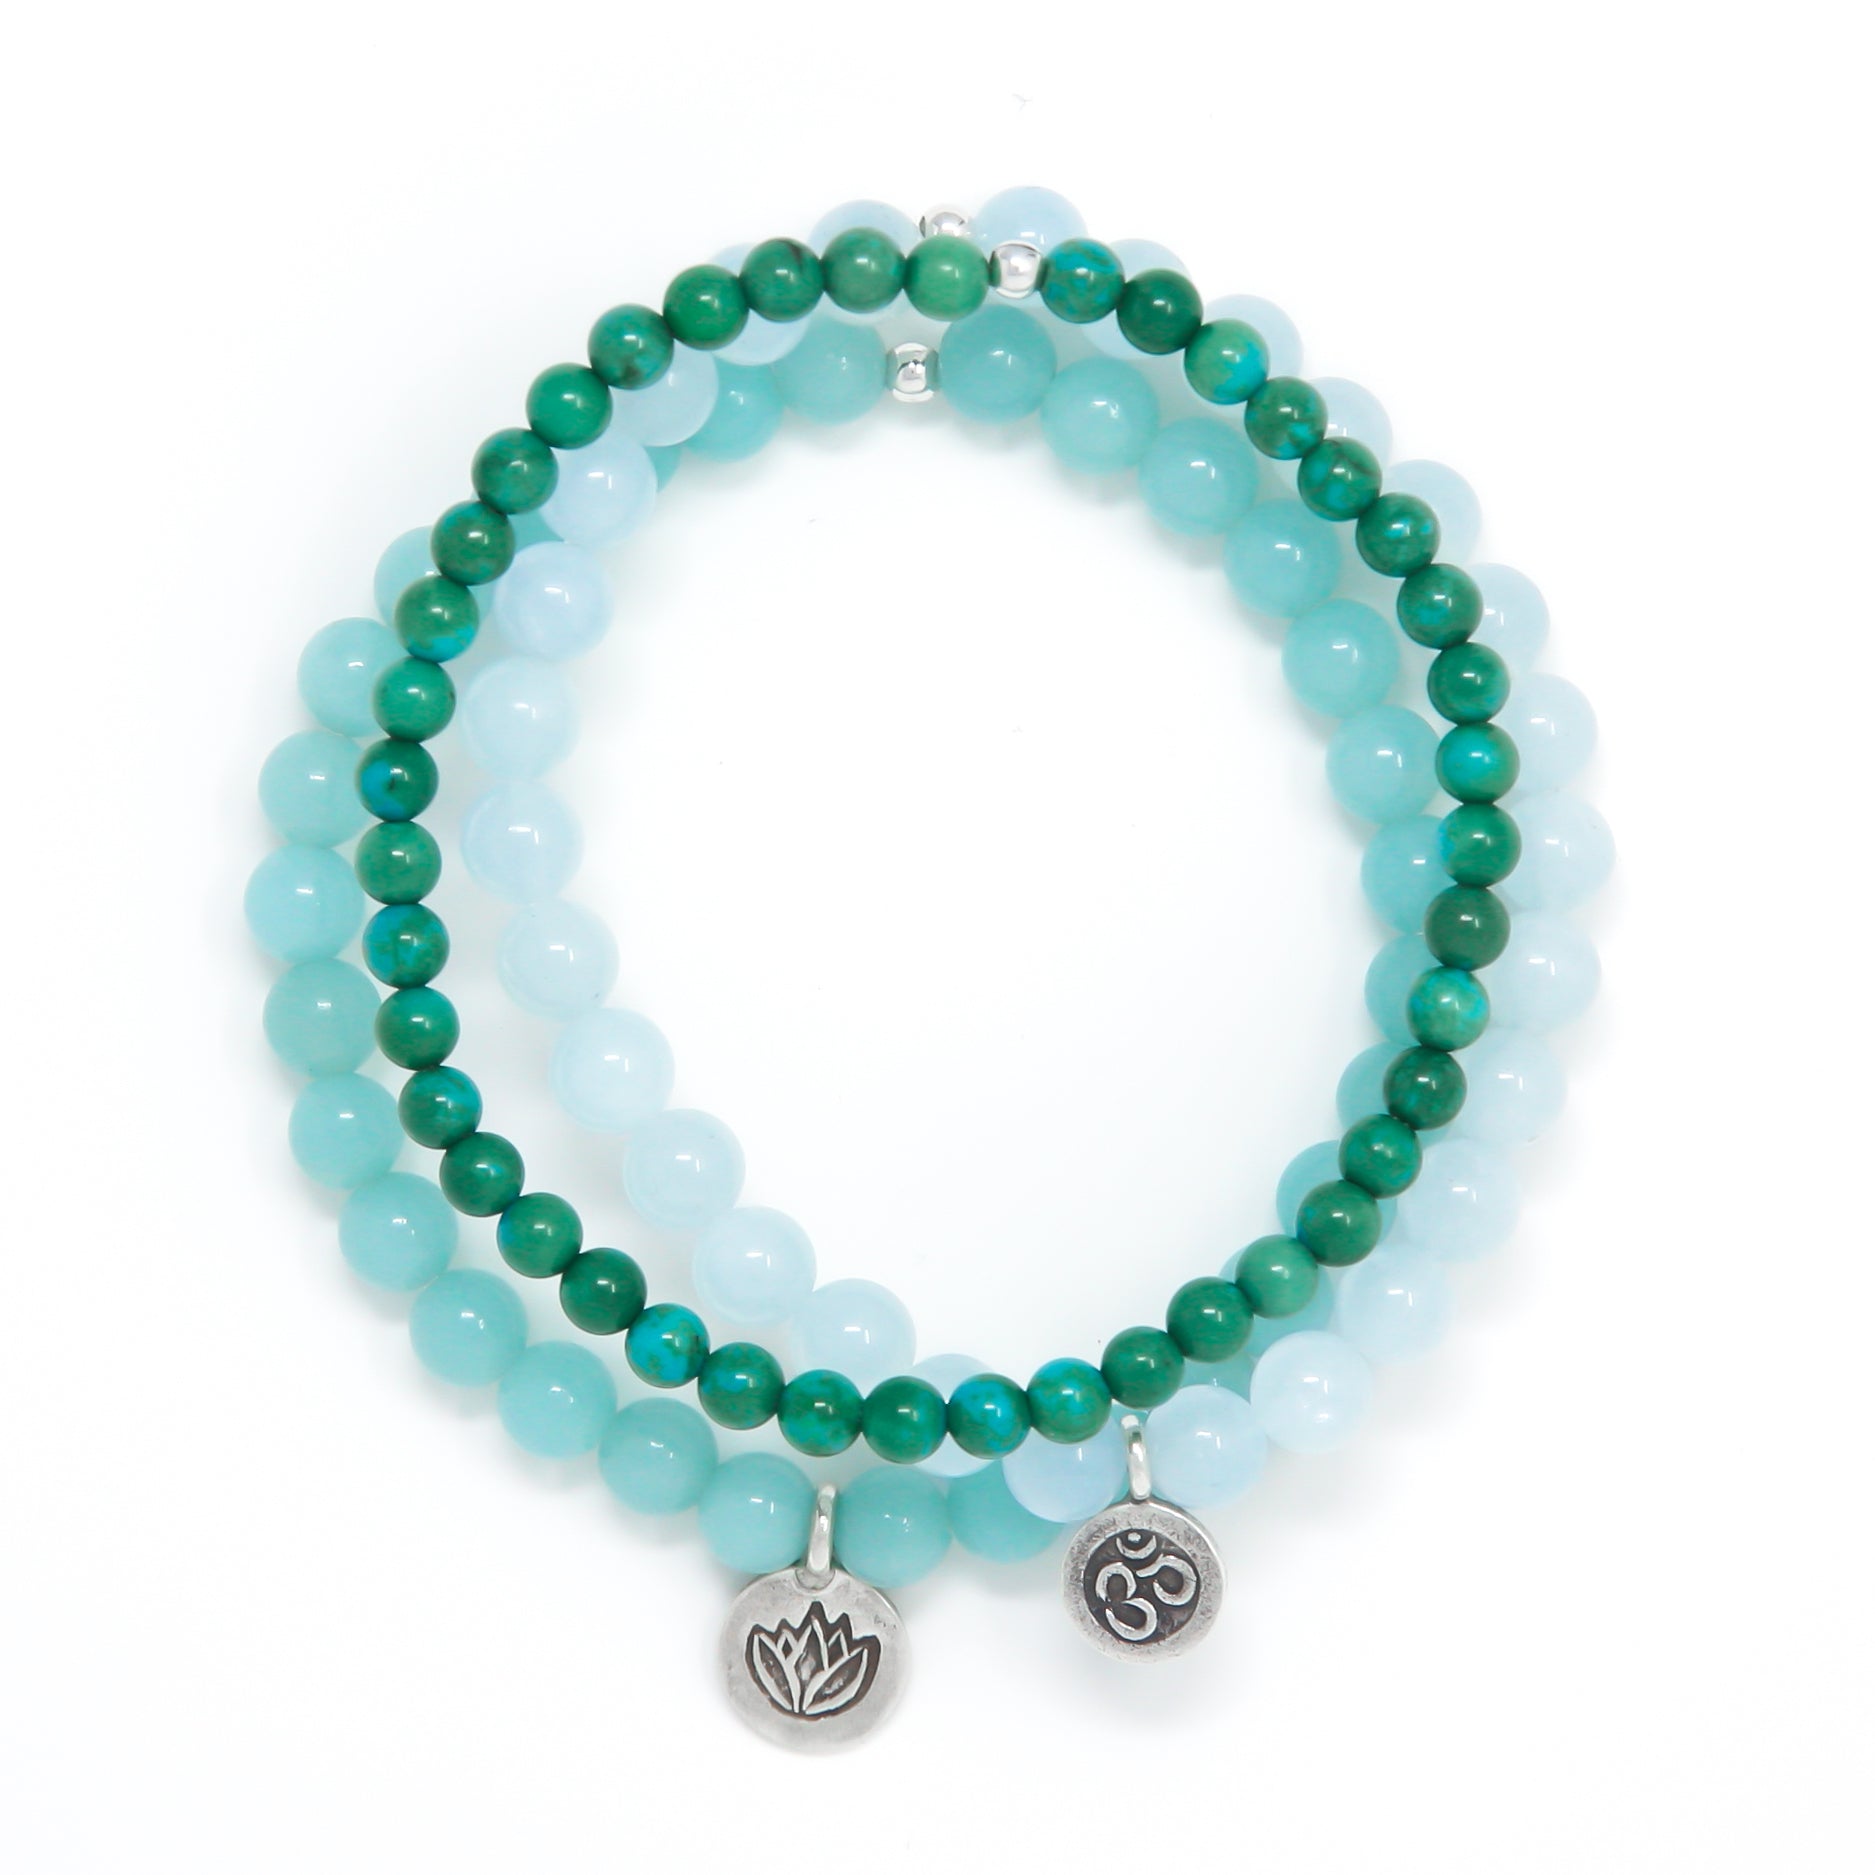 Turquoise, Aquamarine and Amazonite Healing Bracelet Set, modern yoga jewelry